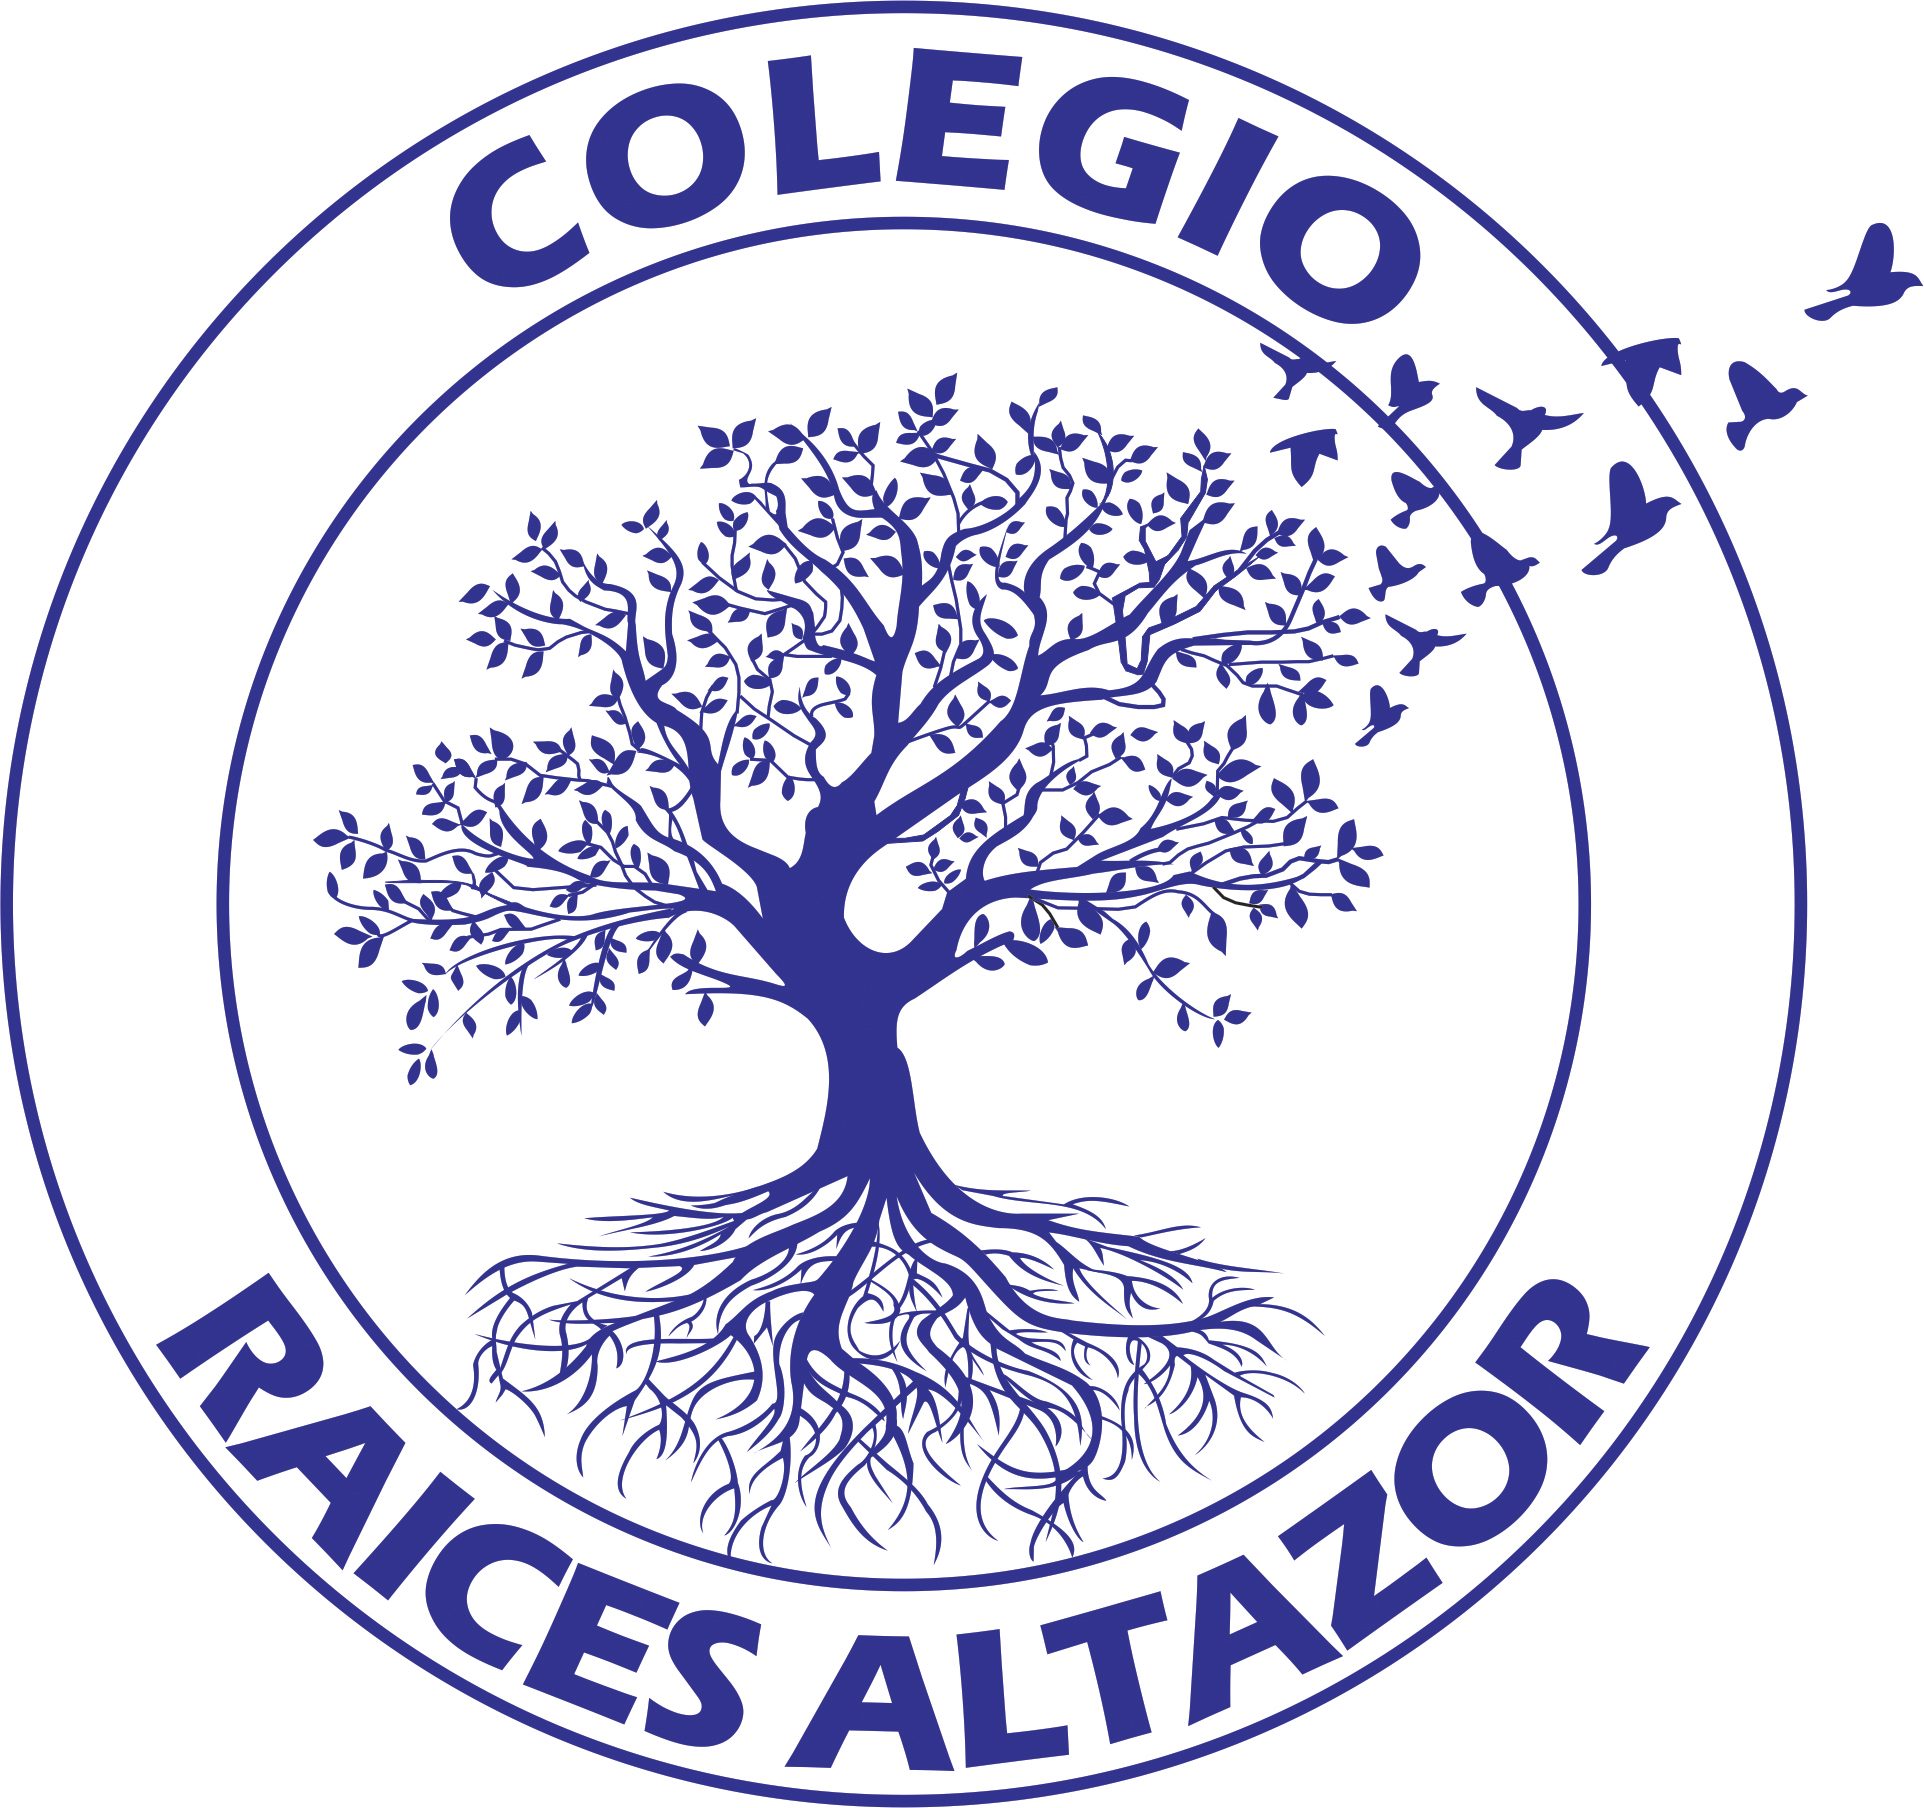 Colegio Raíces AltazOR